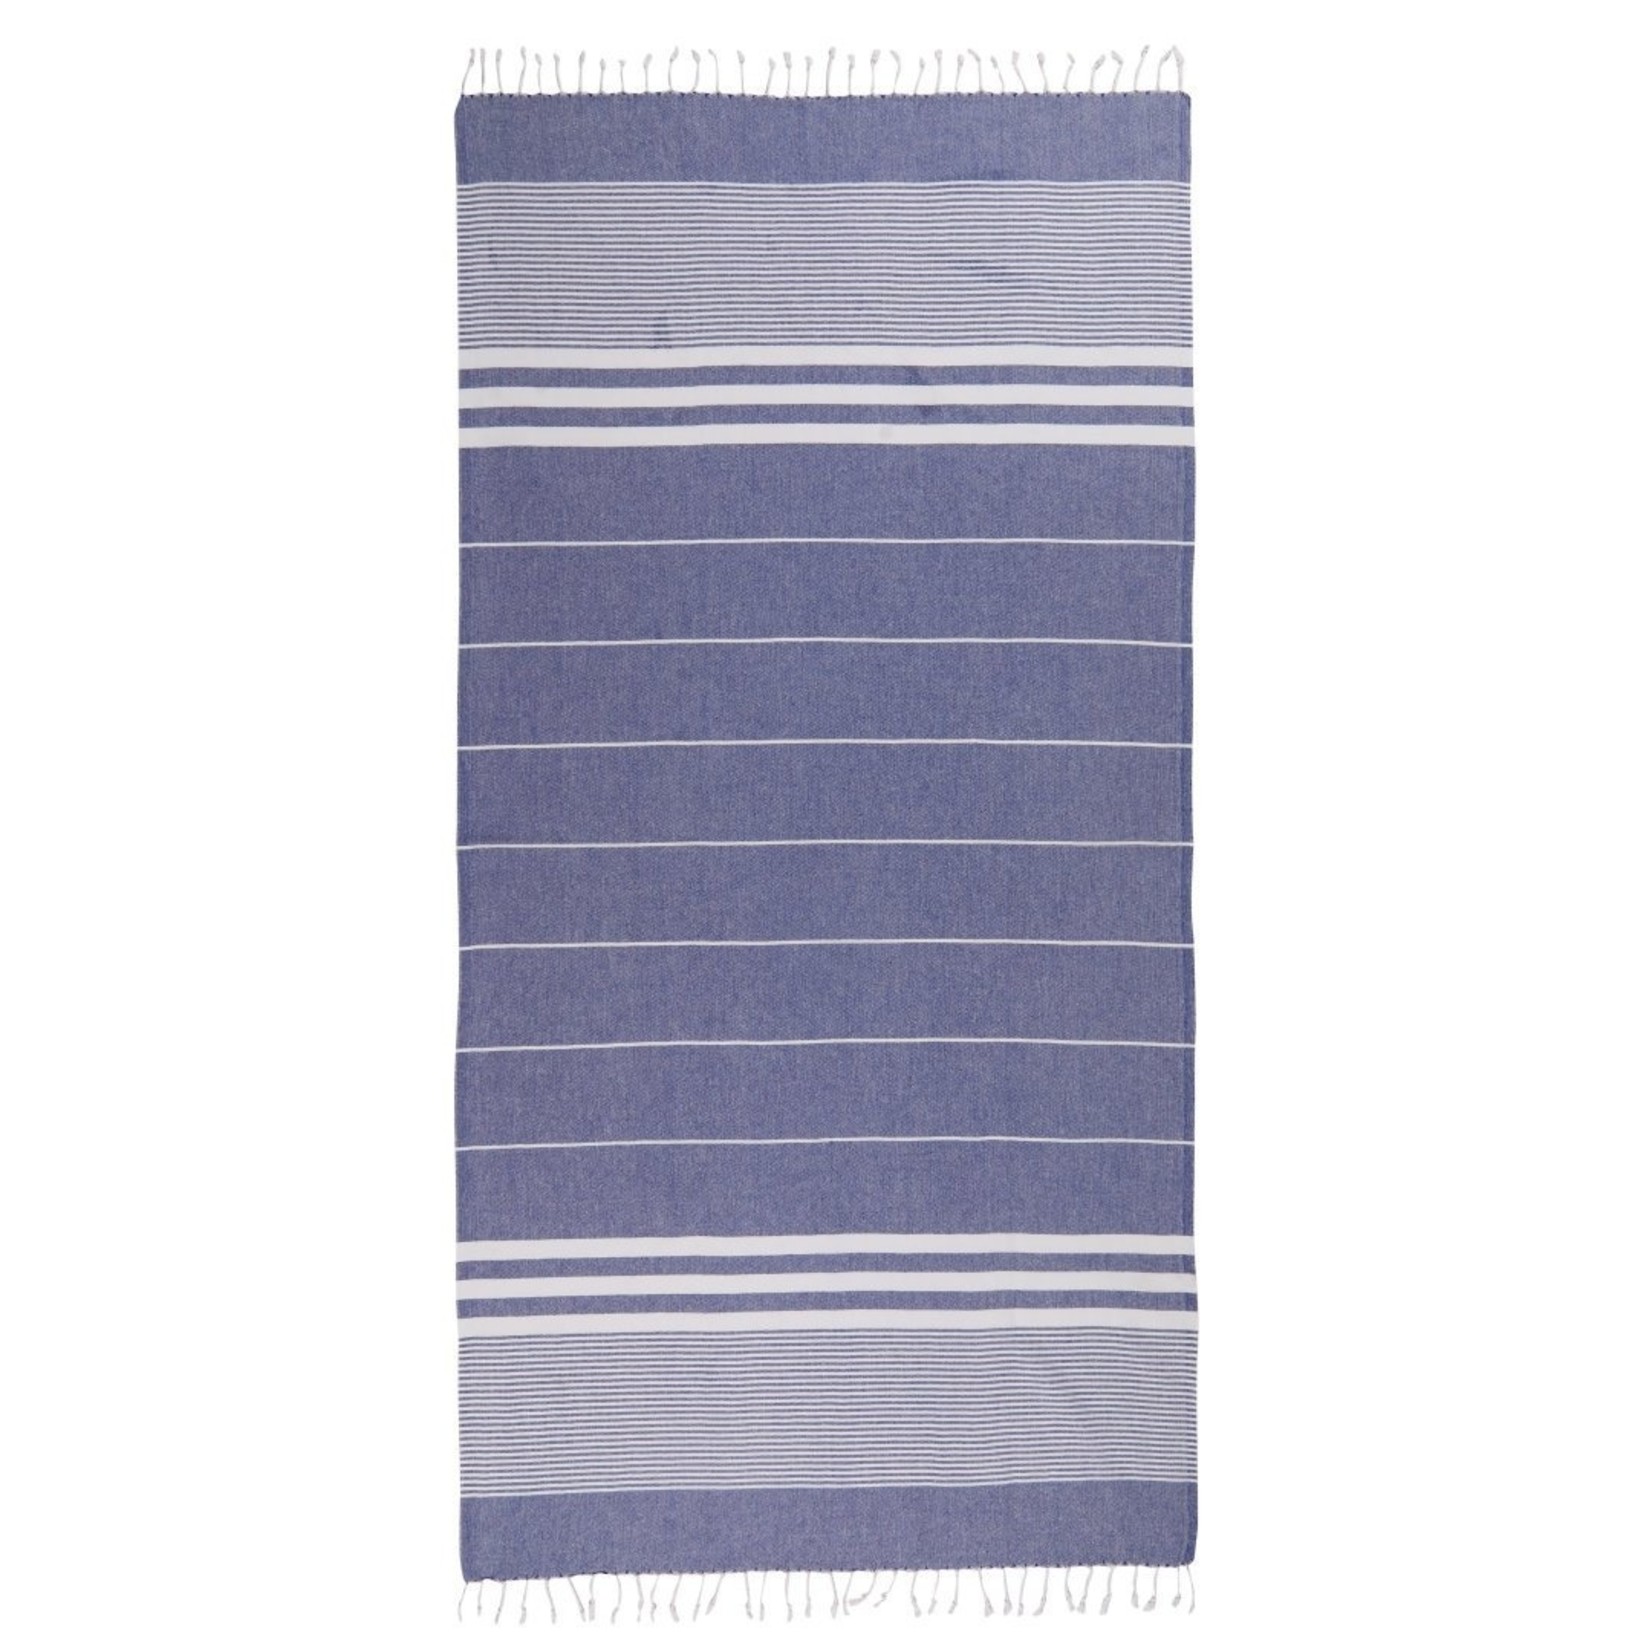 TOWEL TO GO Towel to go Malibu blue 100%BW oeko tex